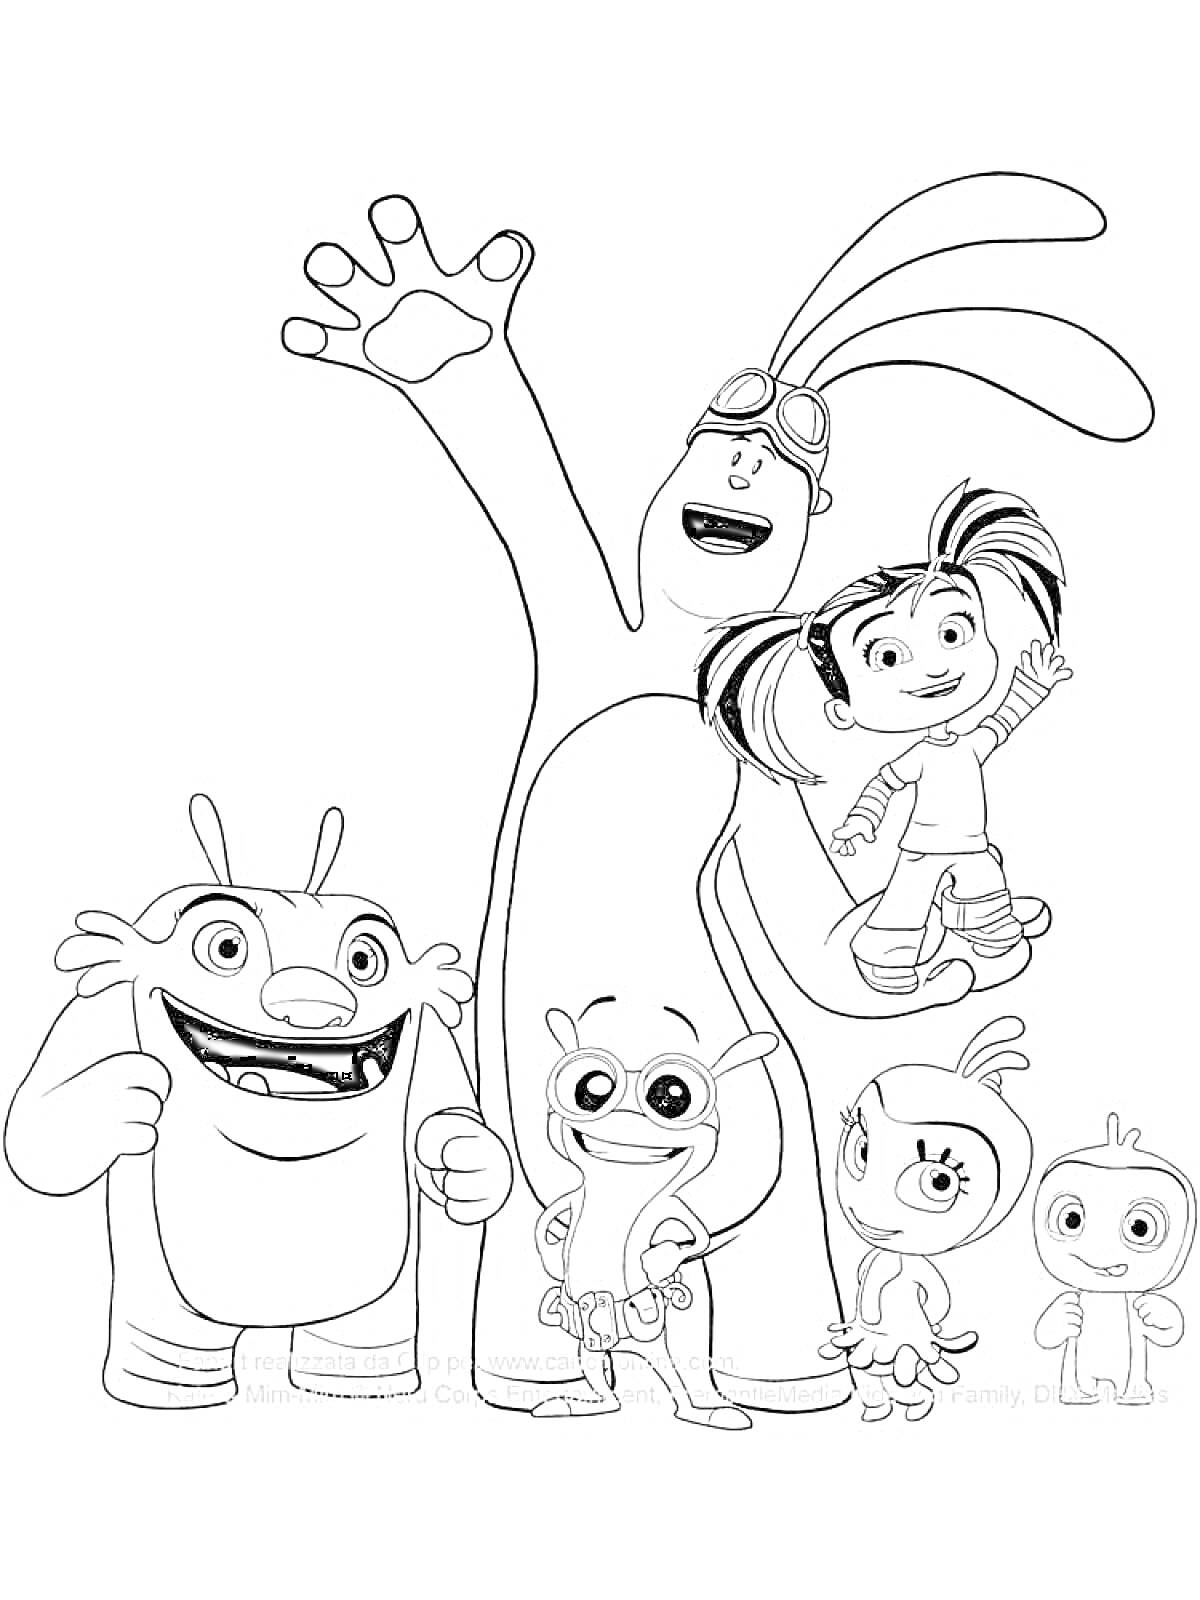 Раскраска Катя, Мим Мим и их друзья (большой ушастый персонаж, девочка на руках, еще три маленьких персонажа)